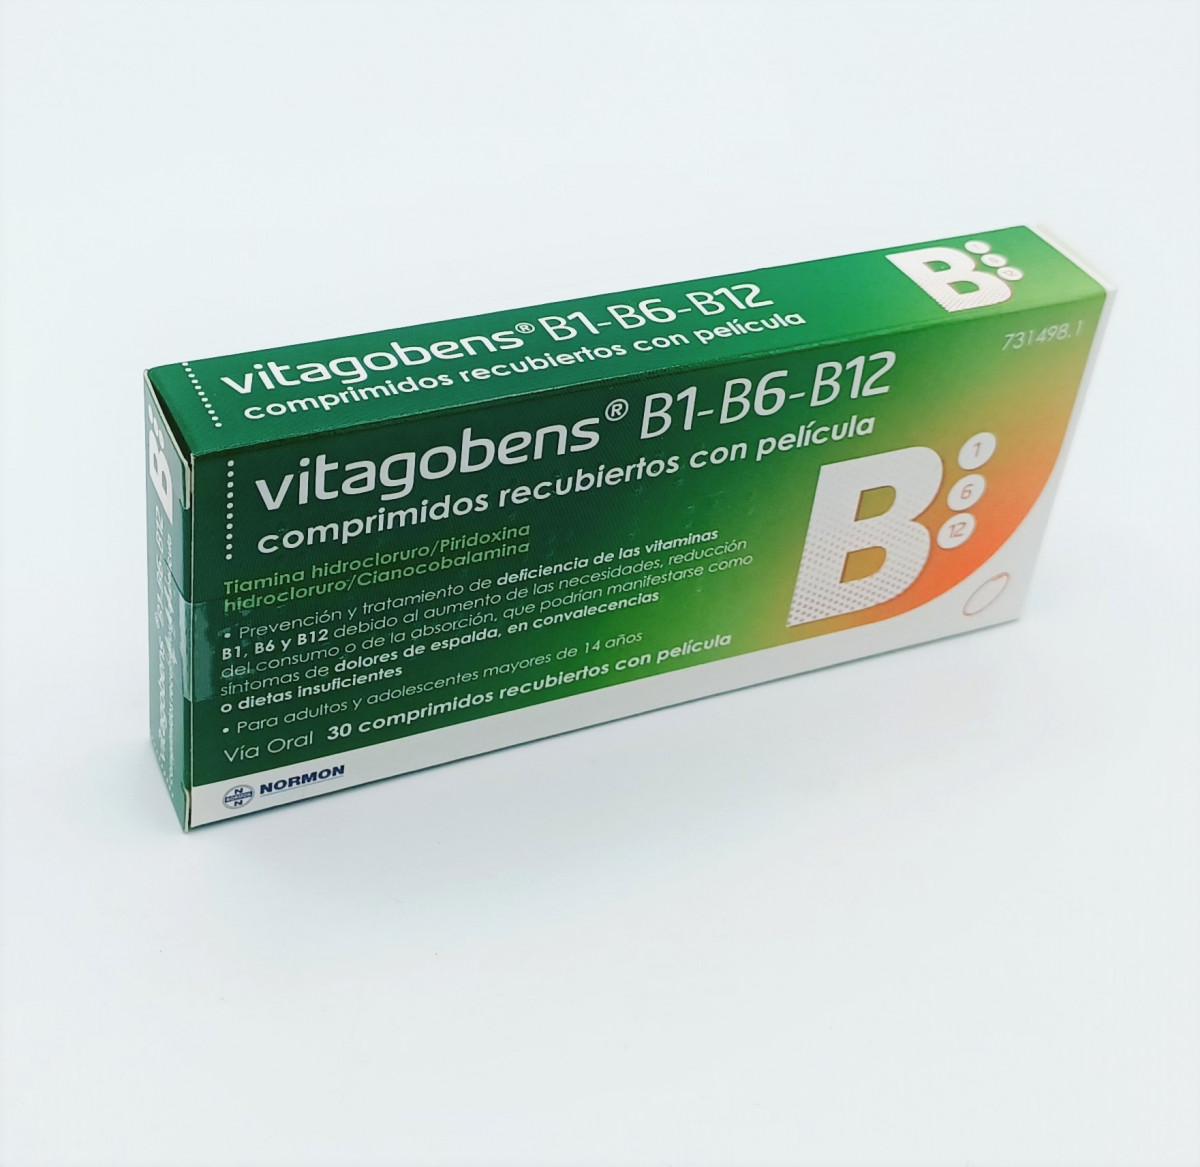 VITAGOBENS B1 B6 B12 COMPRIMIDOS RECUBIERTOS CON PELICULA, 30 comprimidos (Al/PVC/ACLAR(PCTFE) fotografía del envase.